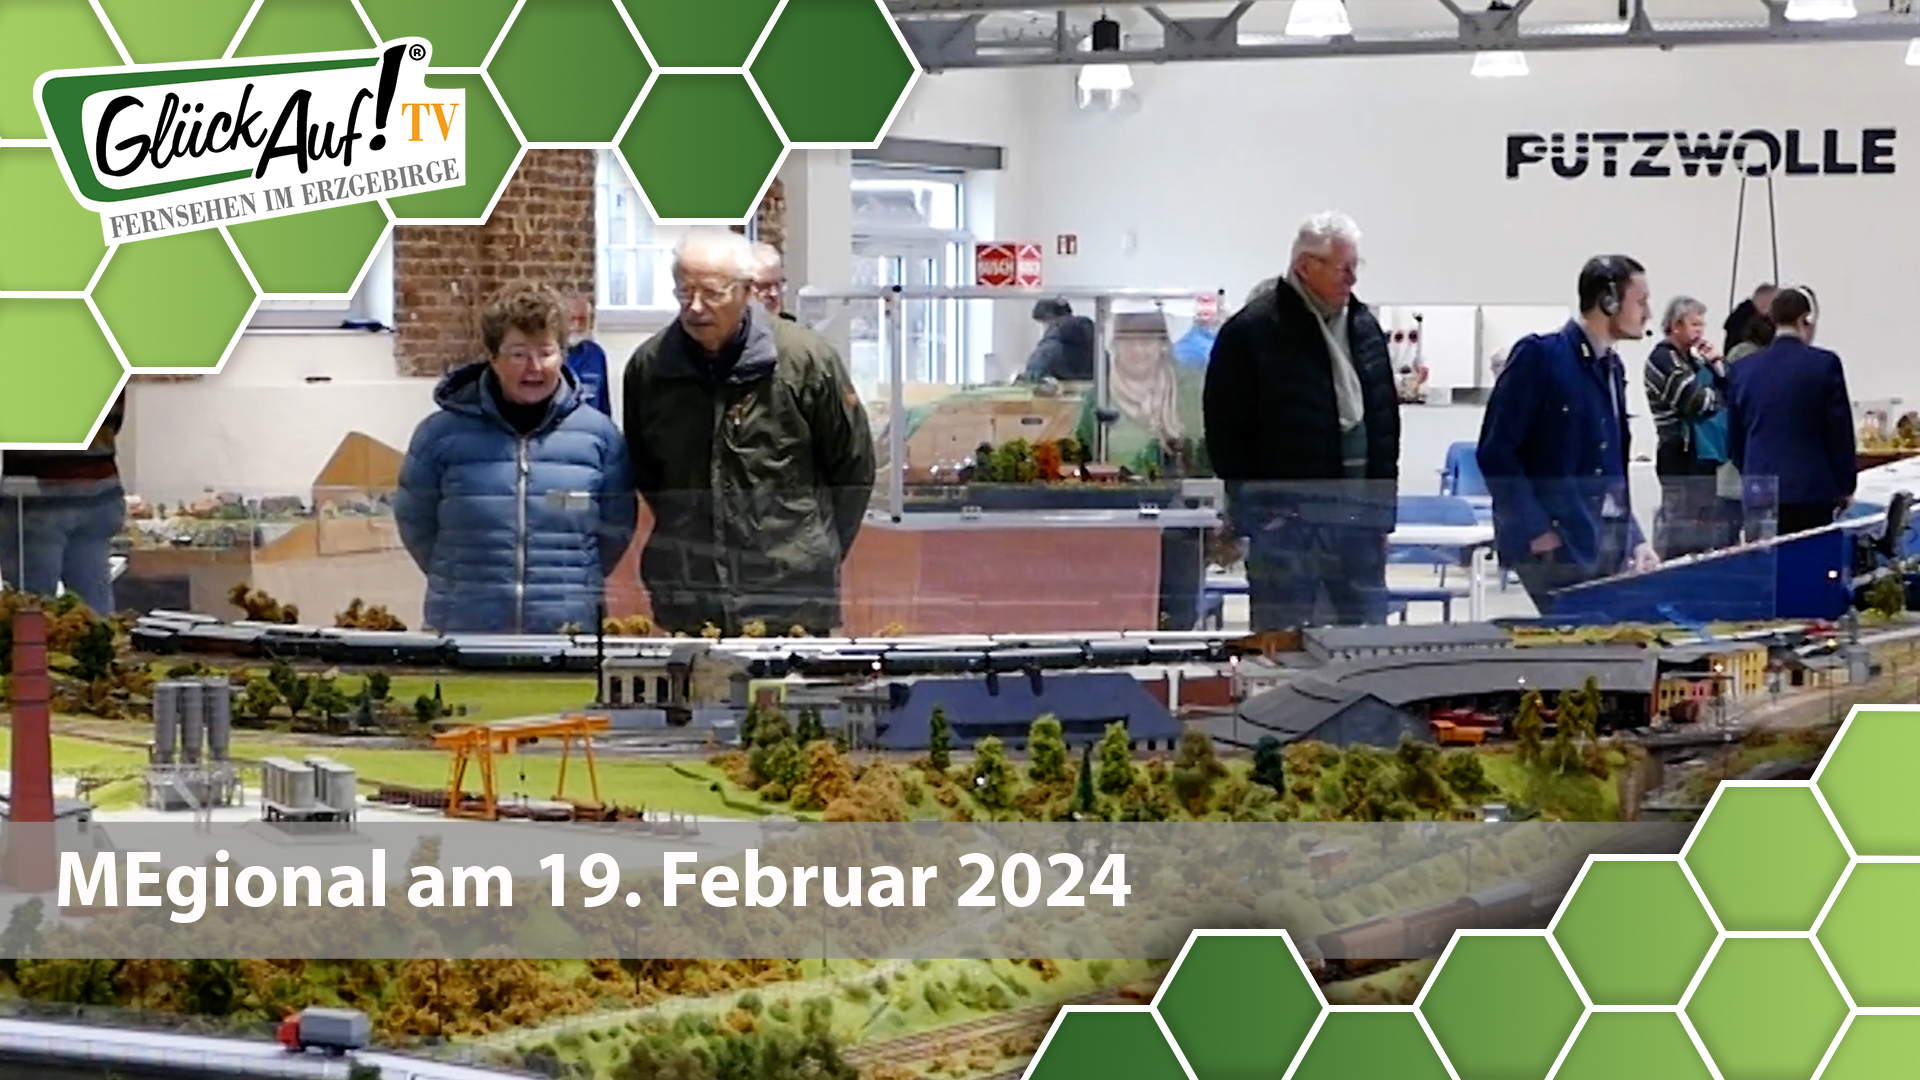 MEgional am 19. Februar 2024 mit der Modellbahnausstellung in Lößnitz